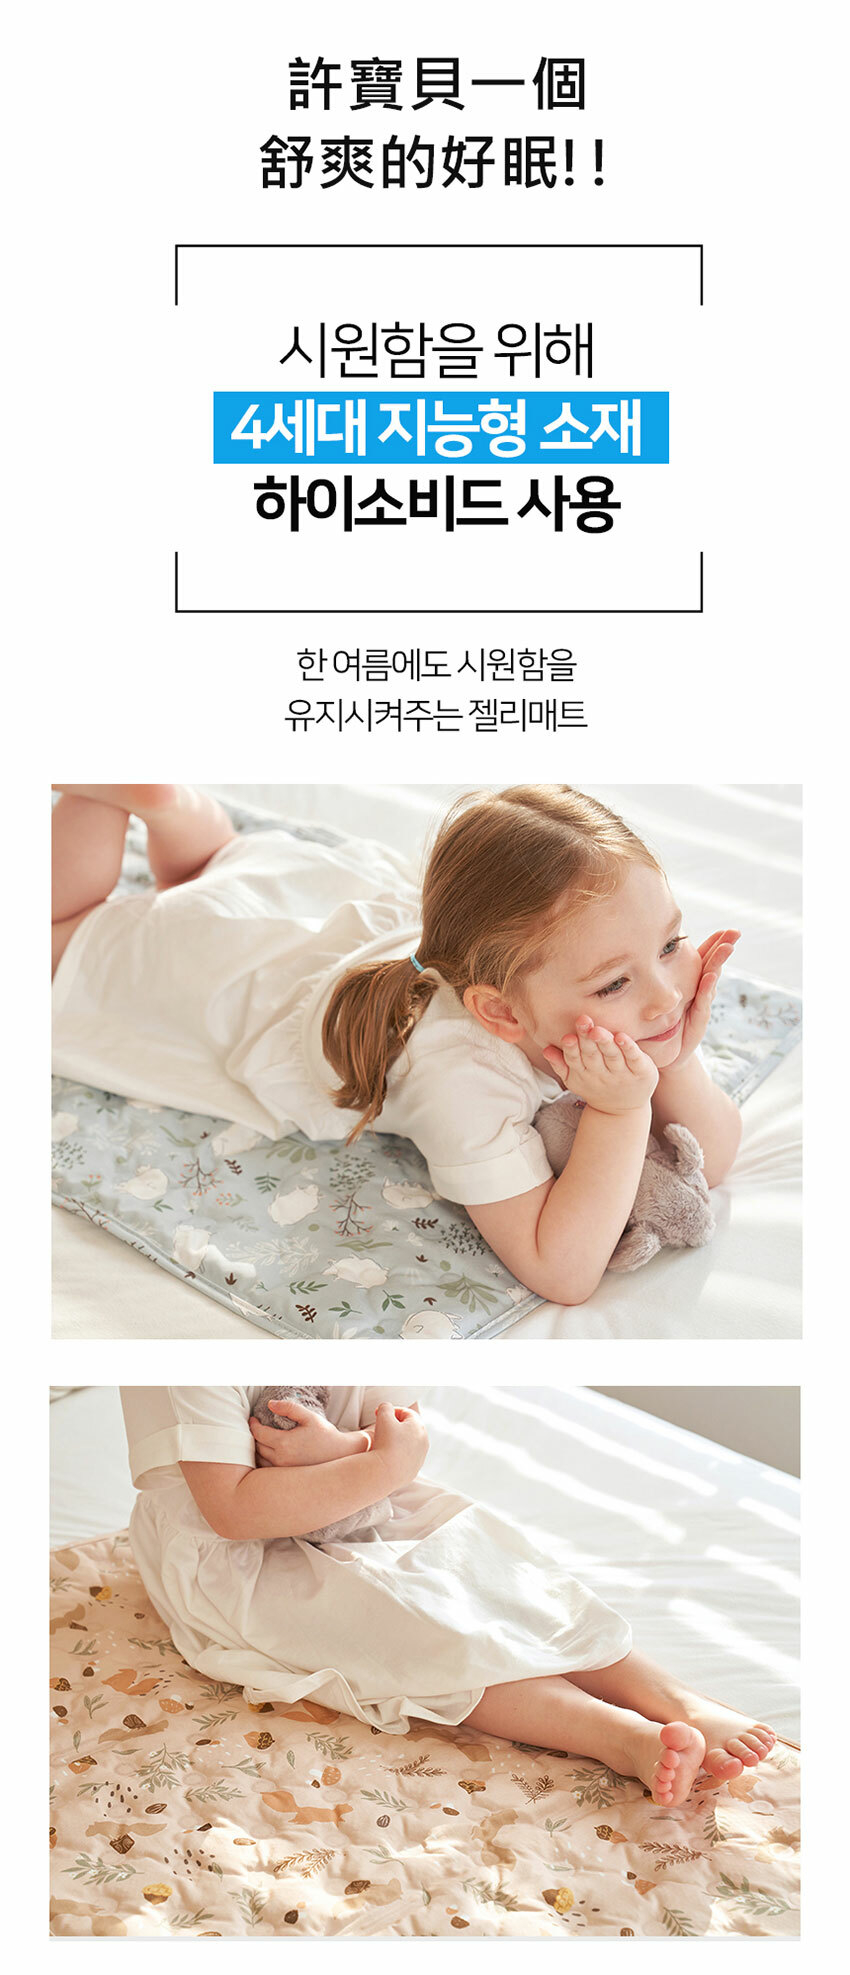 【韓國 Jellypop】Jellymat 全新微顆粒酷涼珠 100%純棉果凍床墊 - 牛奶跳跳兔